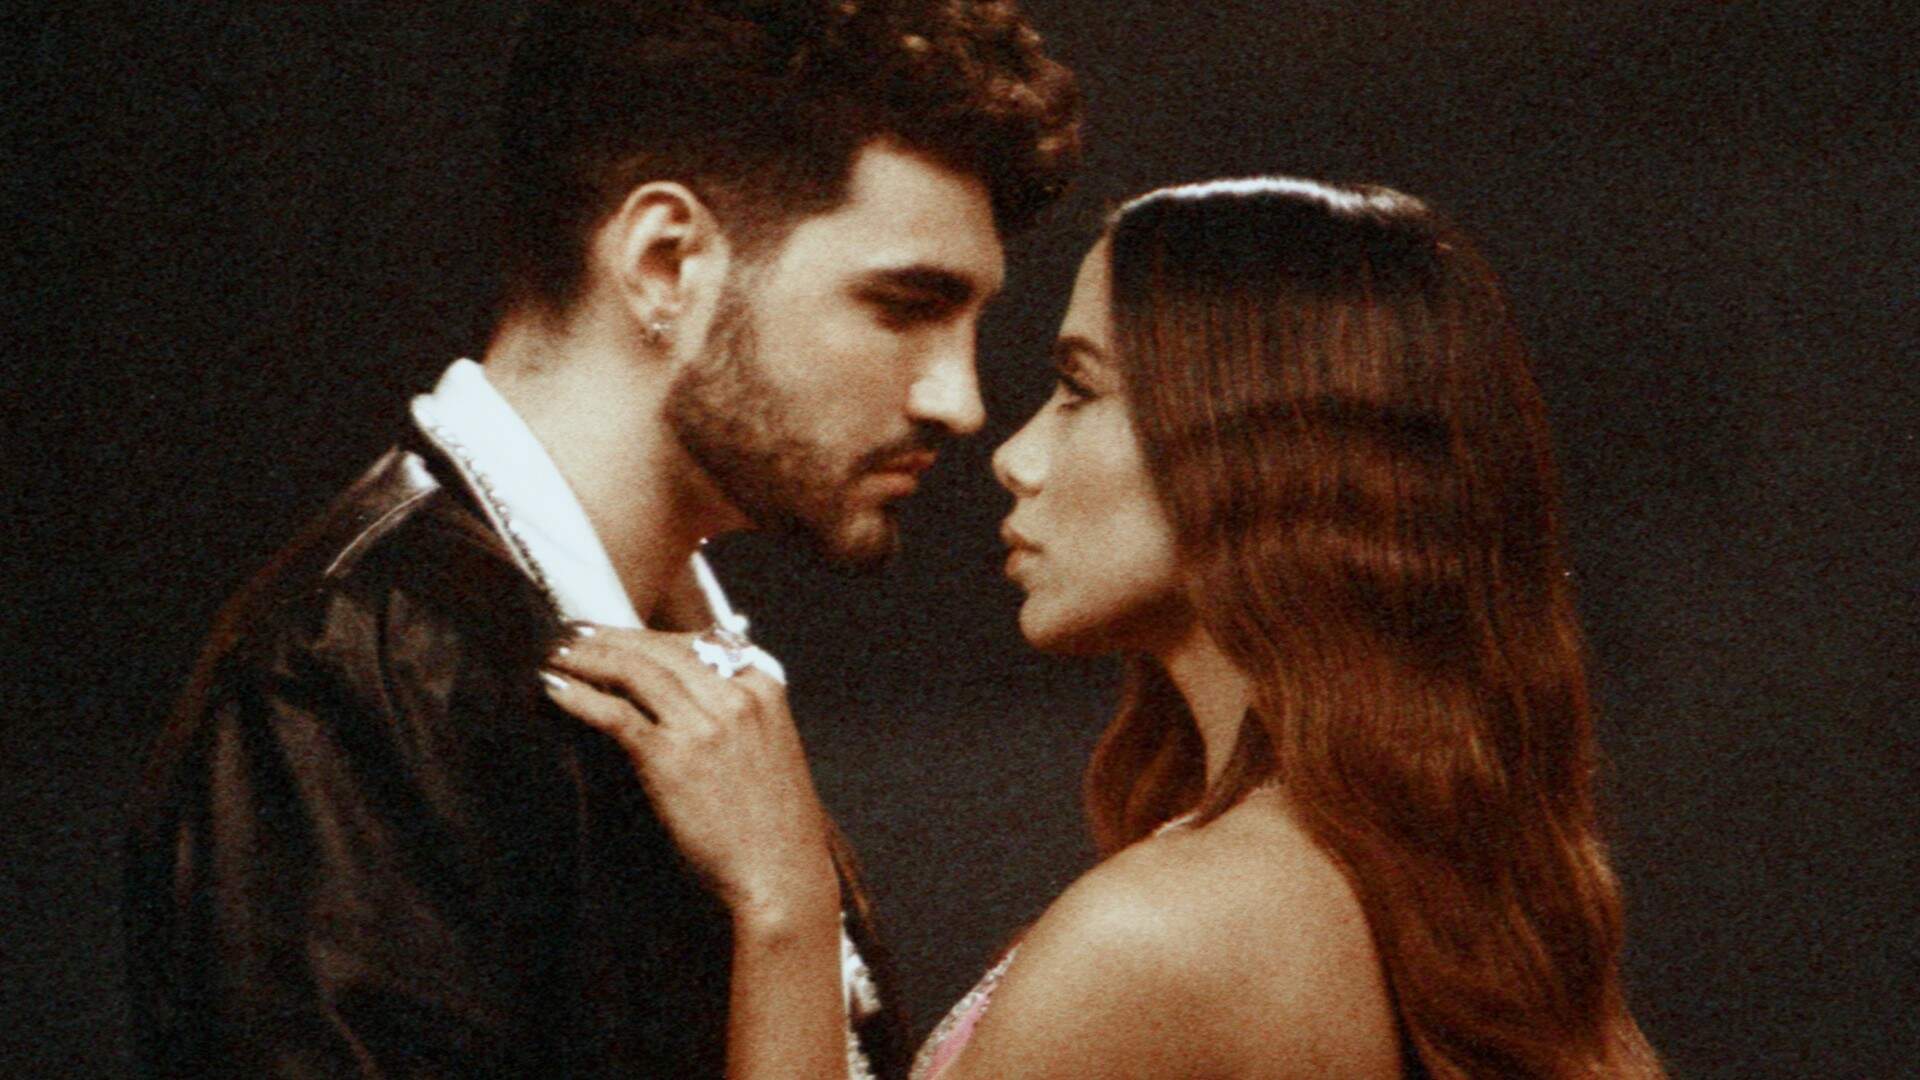 Com cenas chocantes, Anitta e Jão dão beijão em clipe digno de filme de Hollywood; veja “PILANTRA” - Metropolitana FM